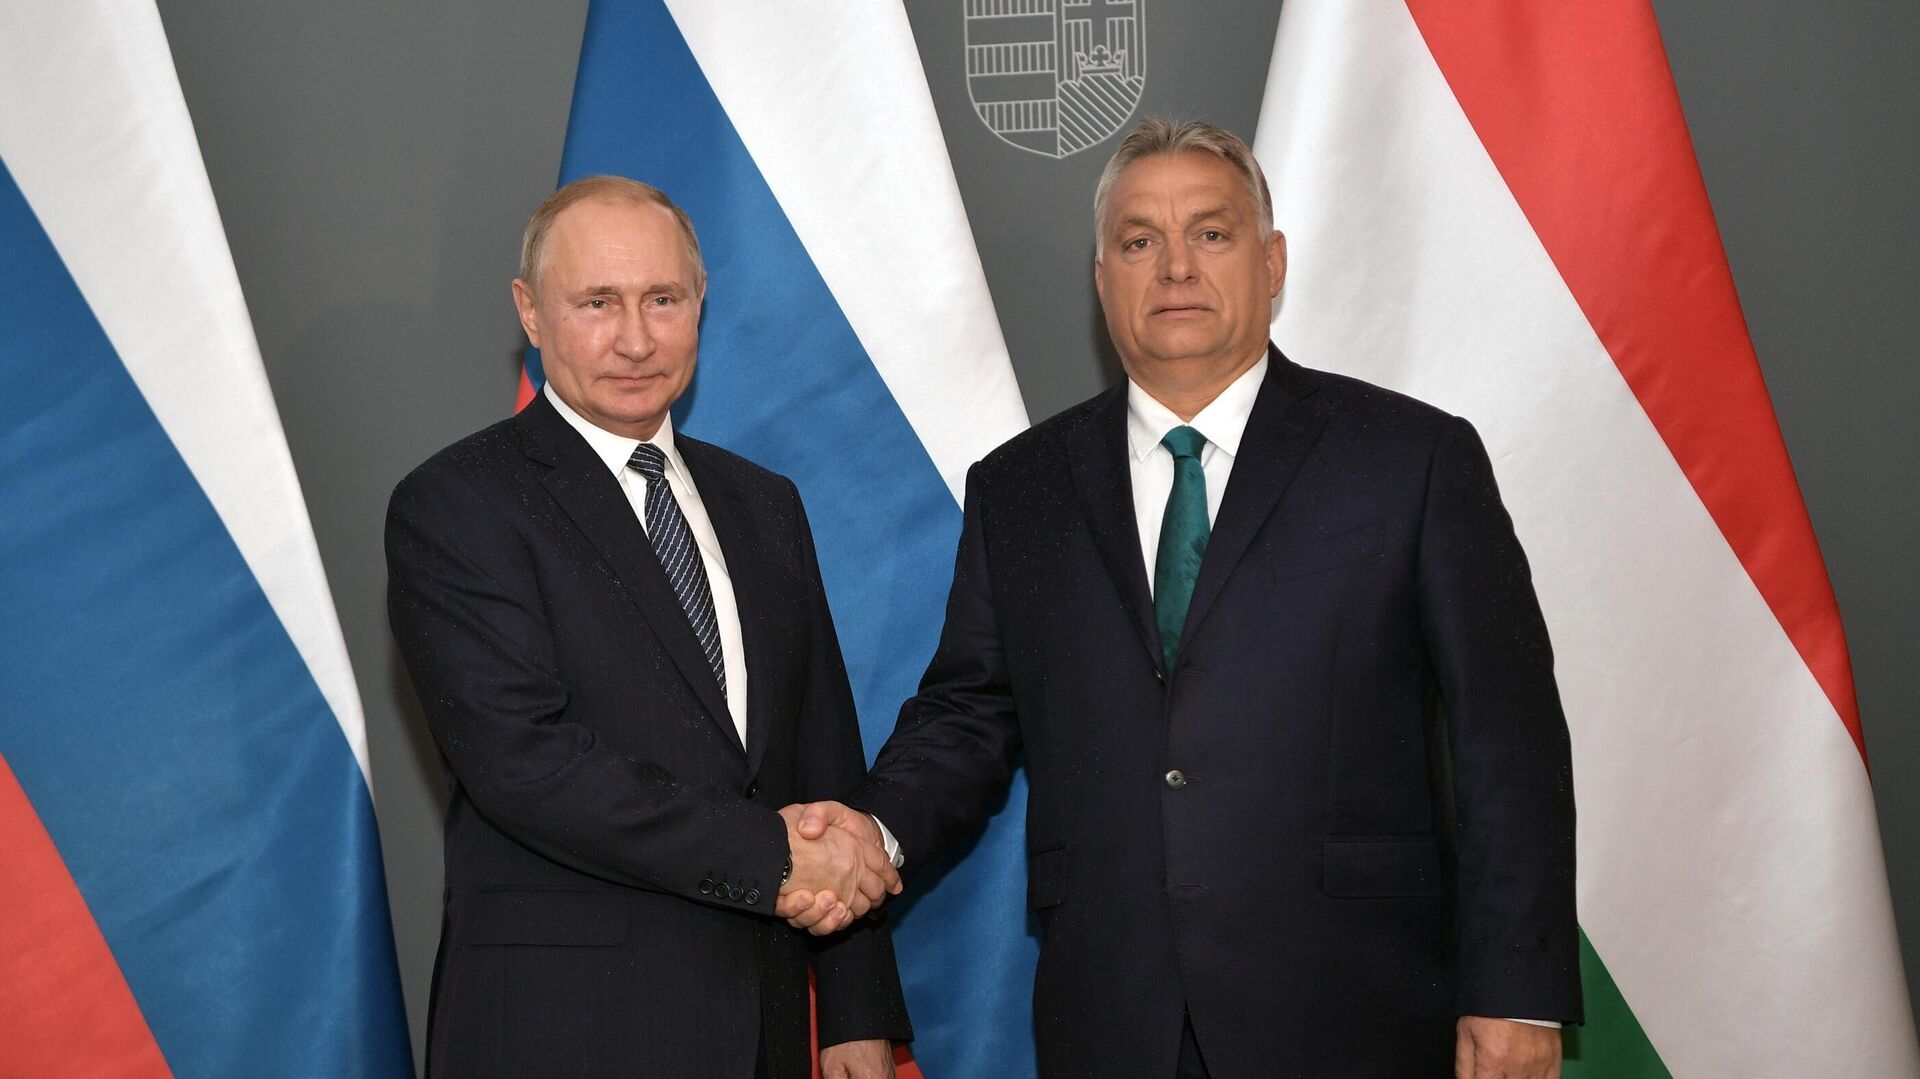 Владимир Путин встретился с Виктором Орбаном